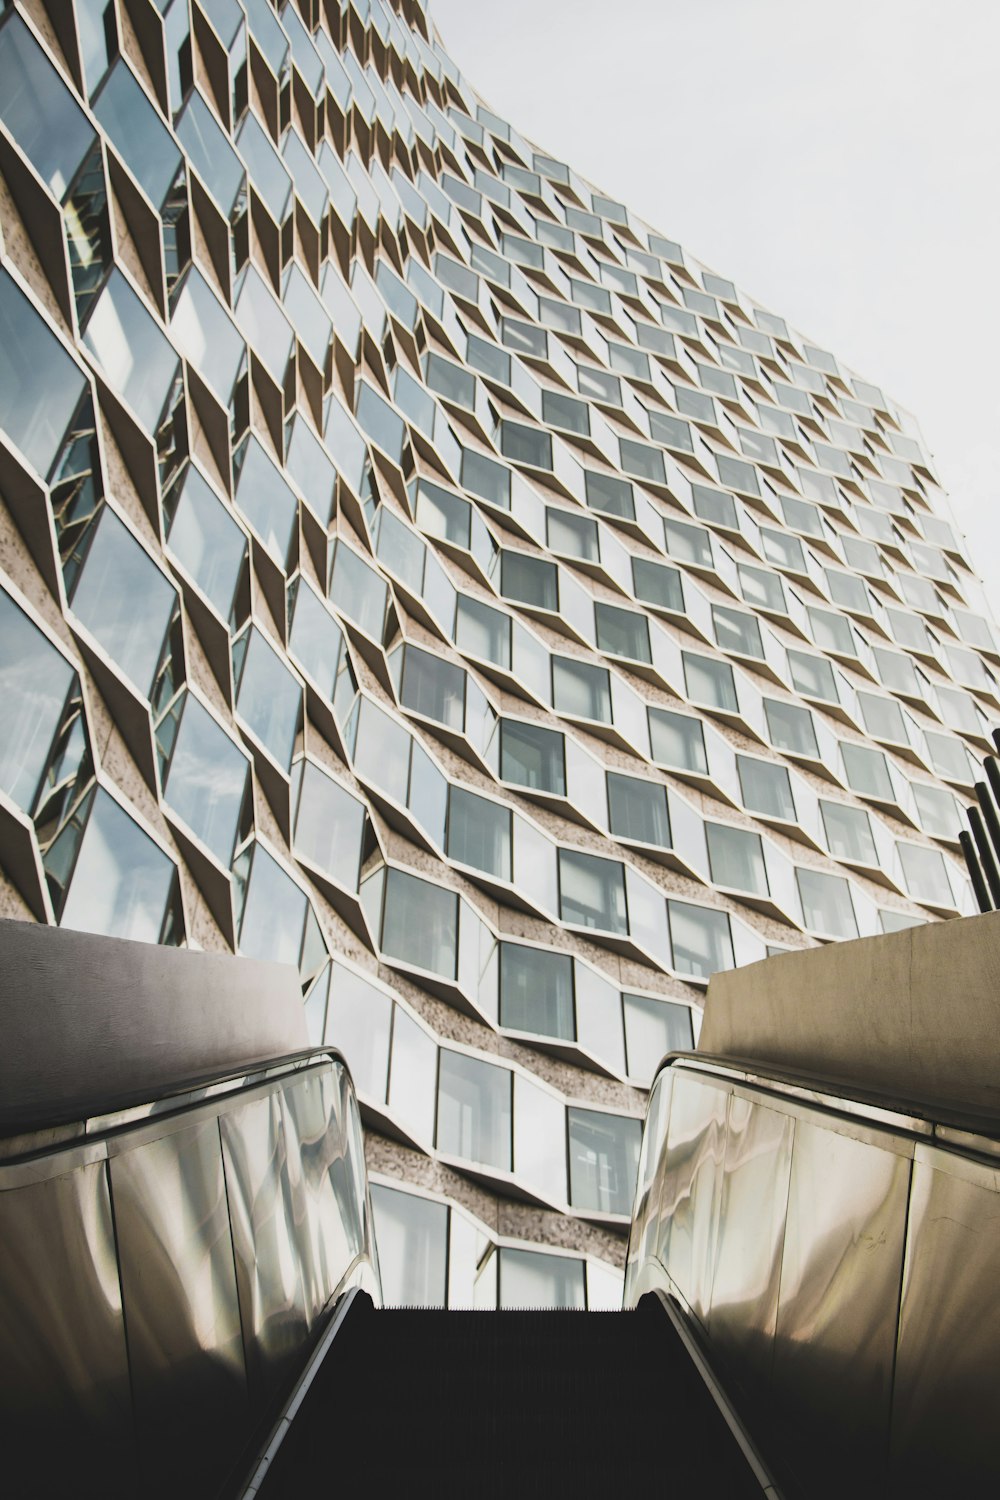 Photographie en contre-plongée d’un immeuble de grande hauteur en verre depuis un escalator